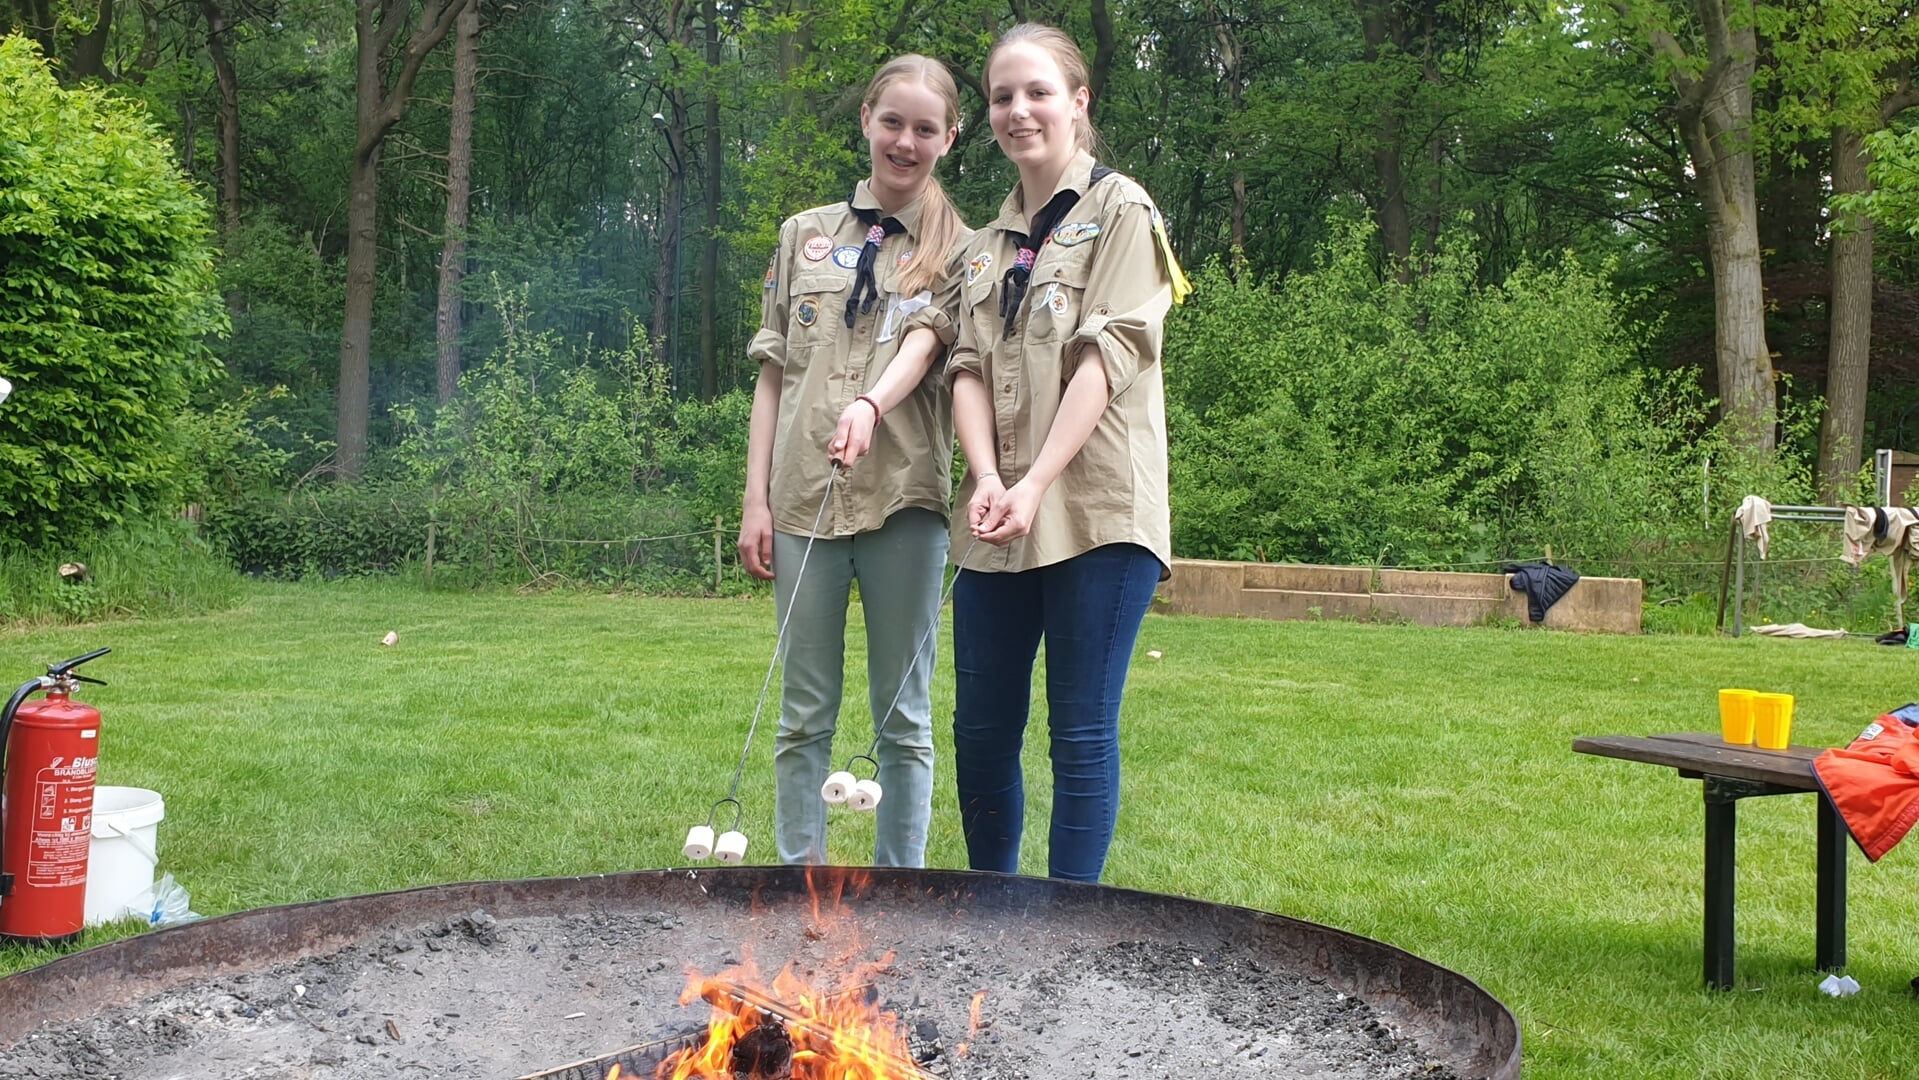 Emma Gerard en Lianne van Alphen van Scouting Boxtel vermaakten zich prima tijdens het jubileumfeest. Ze mochten onder meer marshmallows roosteren boven een kampvuur.